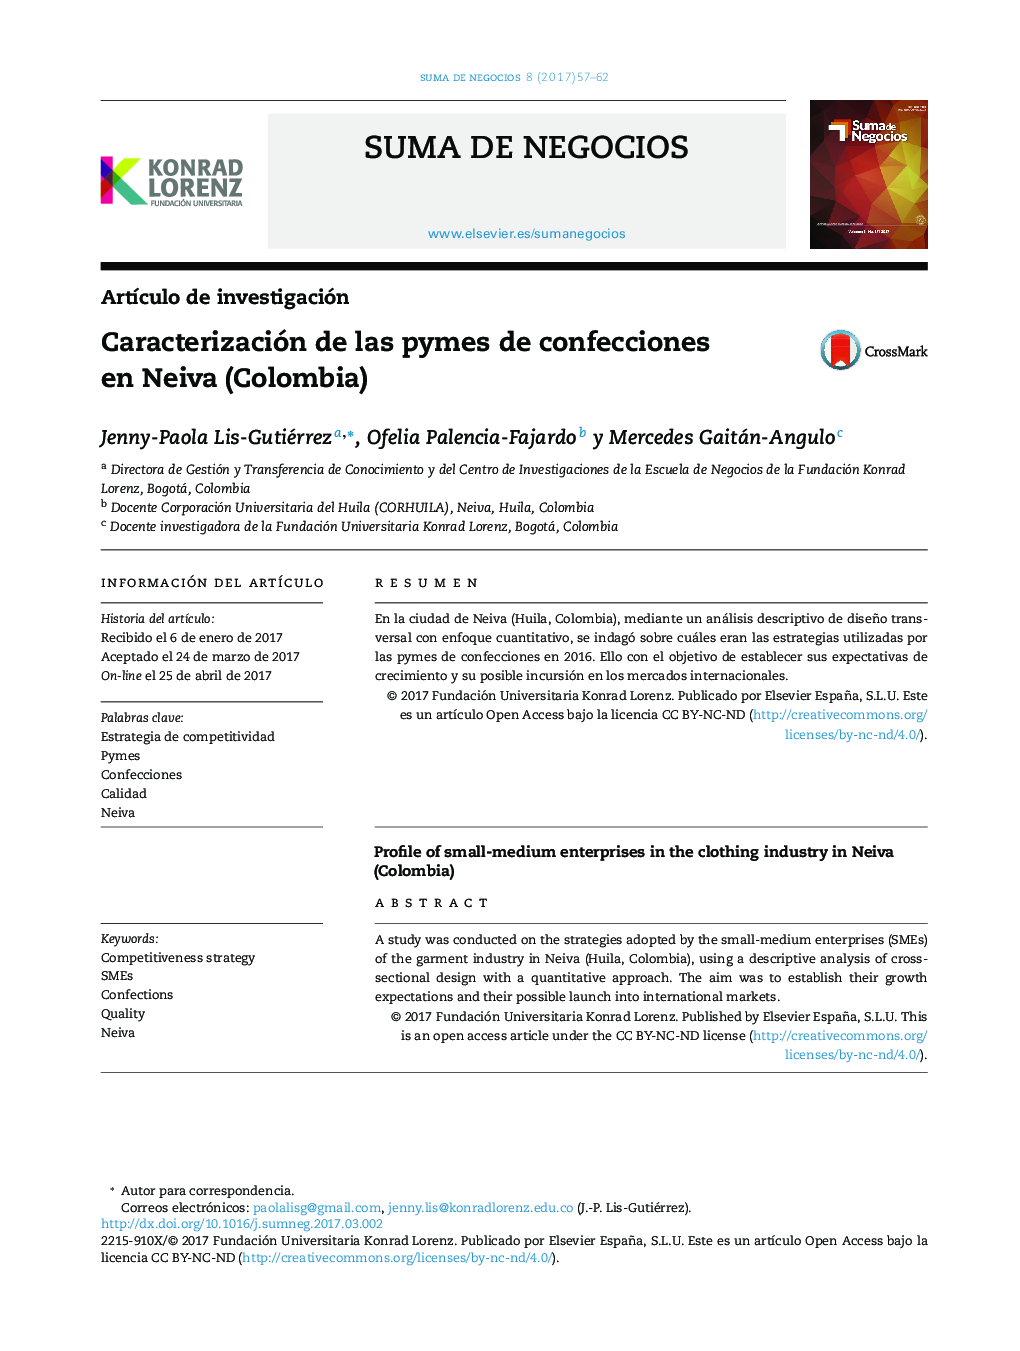 Caracterización de las pymes de confecciones en Neiva (Colombia)